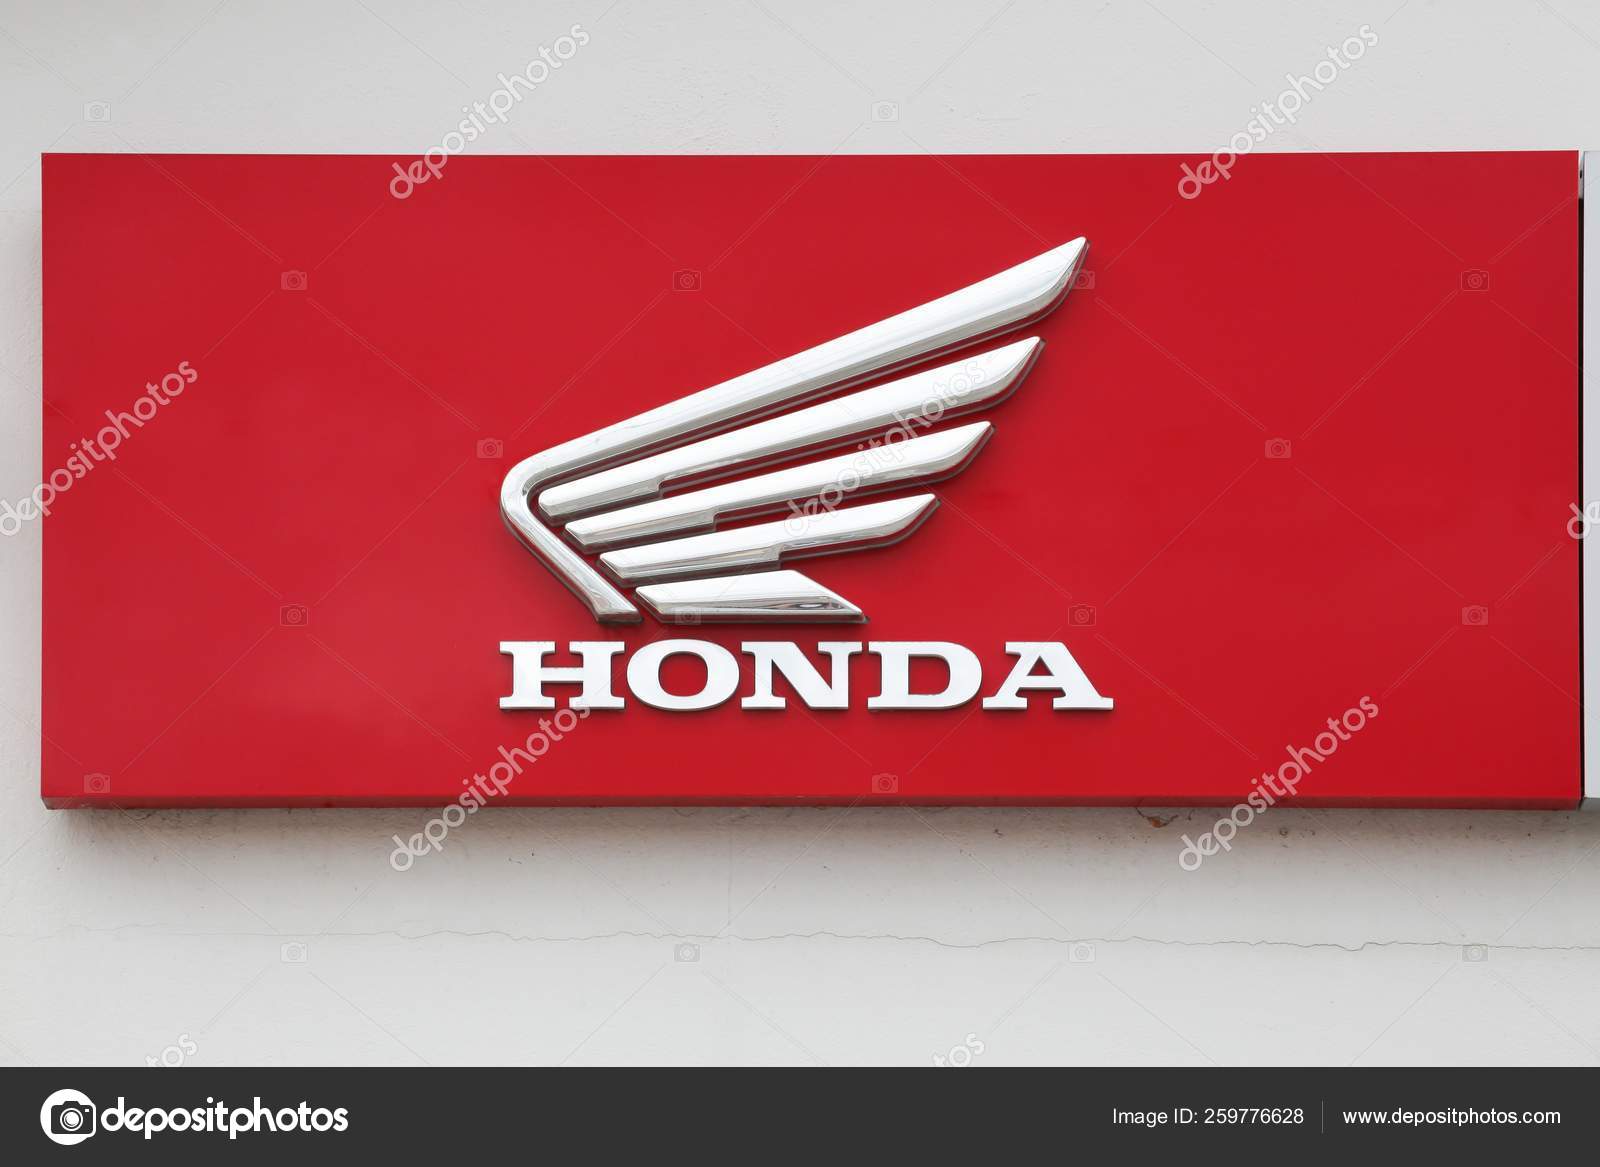 Honda Company Logo Stock Photos Royalty Free Honda Company Logo Images Depositphotos